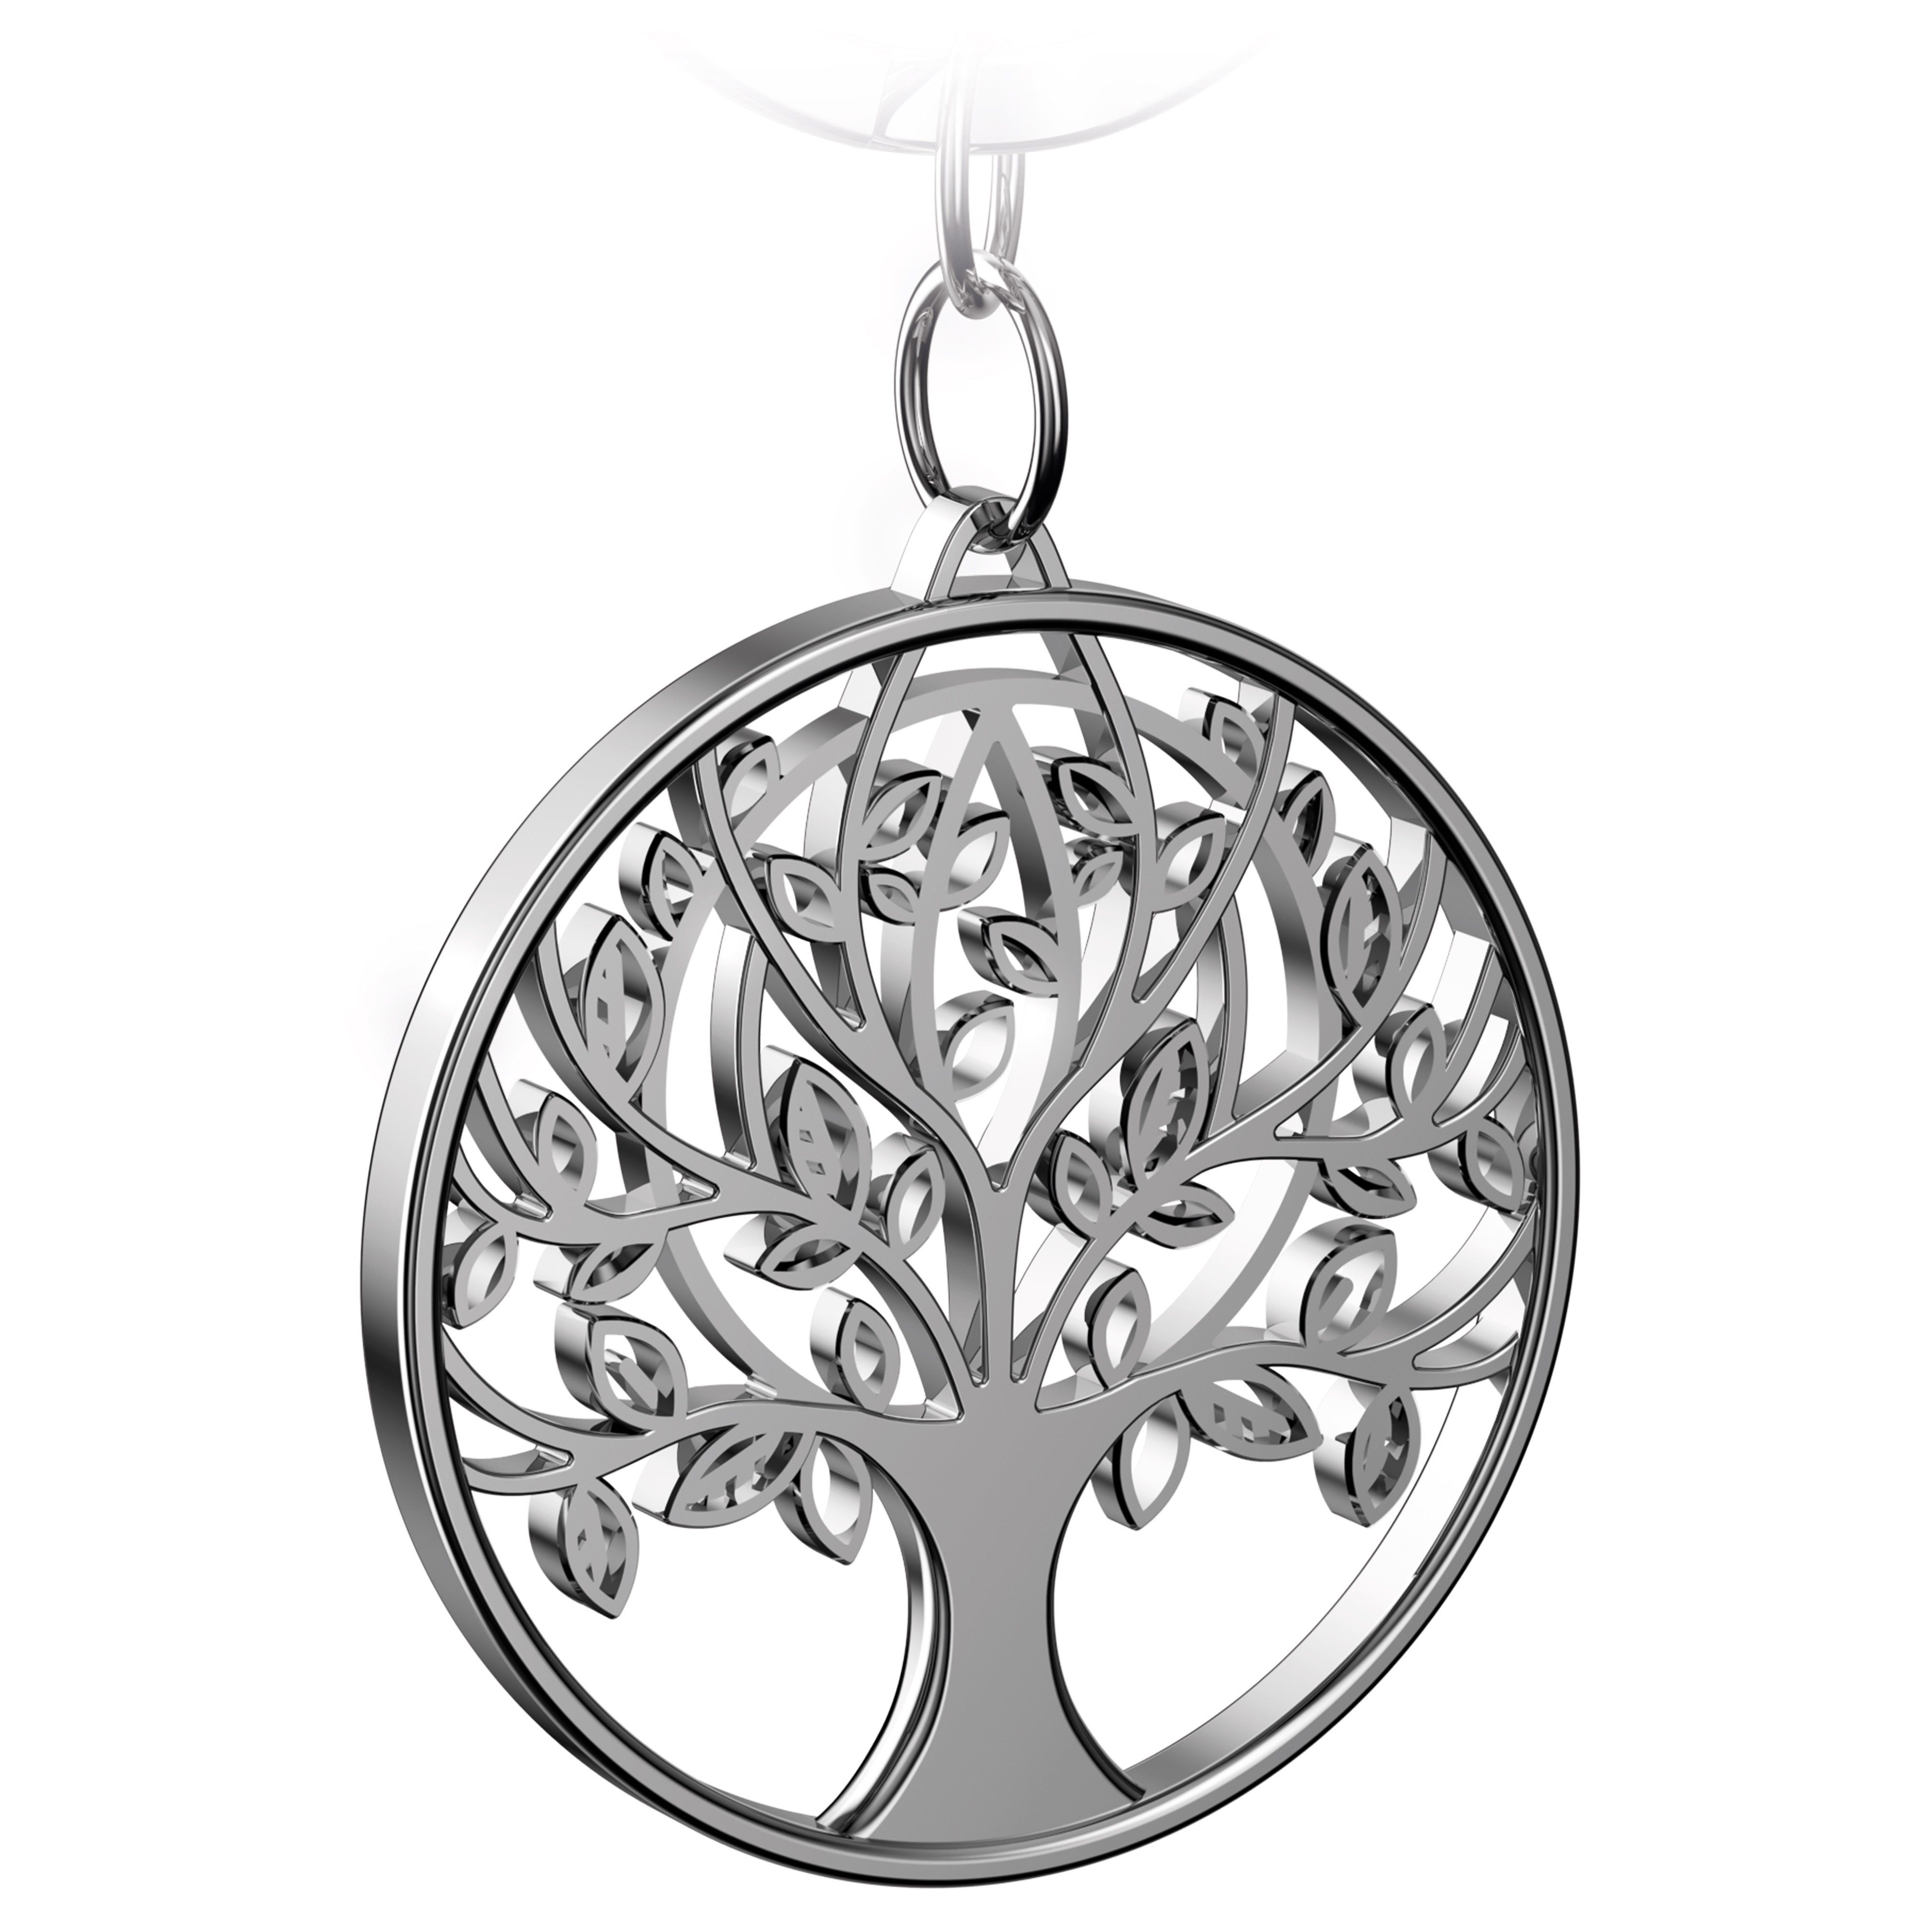 FABACH Schlüsselanhänger Lebensbaum "Autumn" - Baum des Lebens Anhänger als Glücksbringer Silber